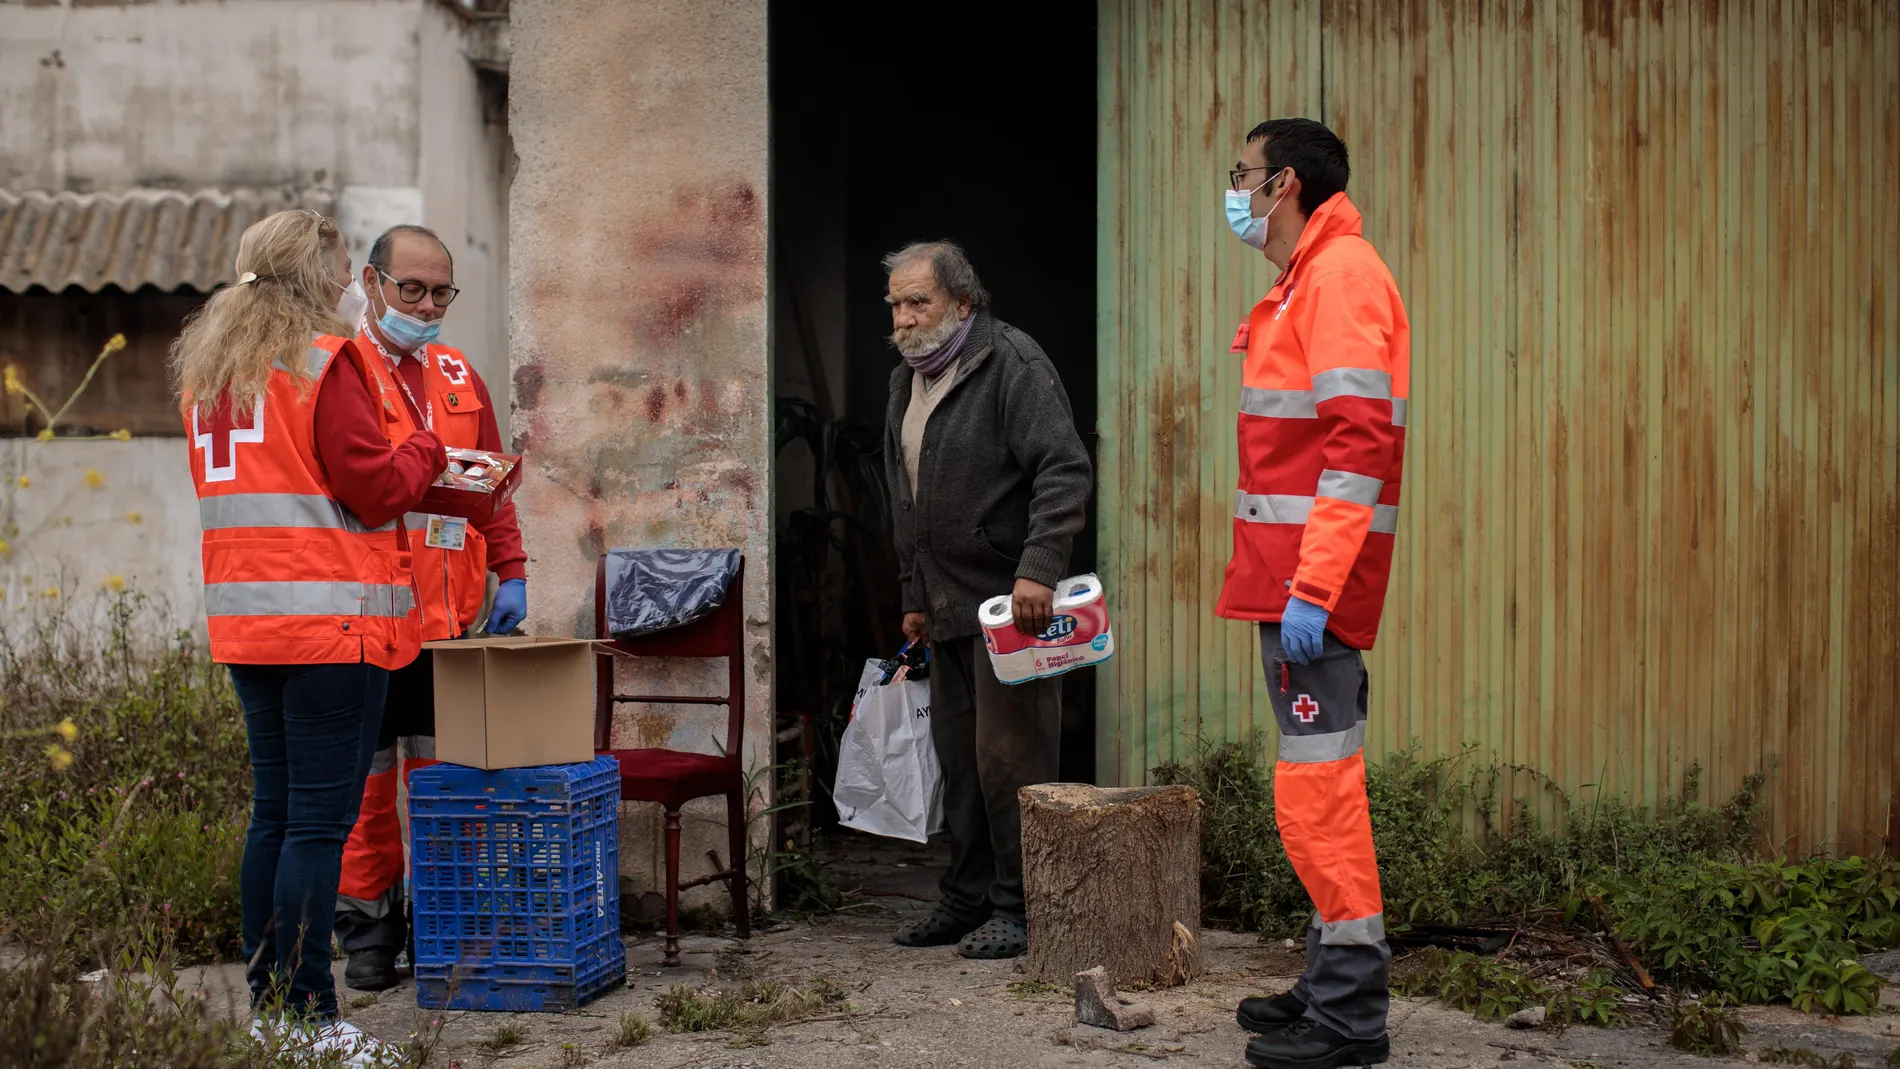 Voluntarios de Cruz Roja llevan comida a "sintecho" solitarios y aislados (Fotogaleria)